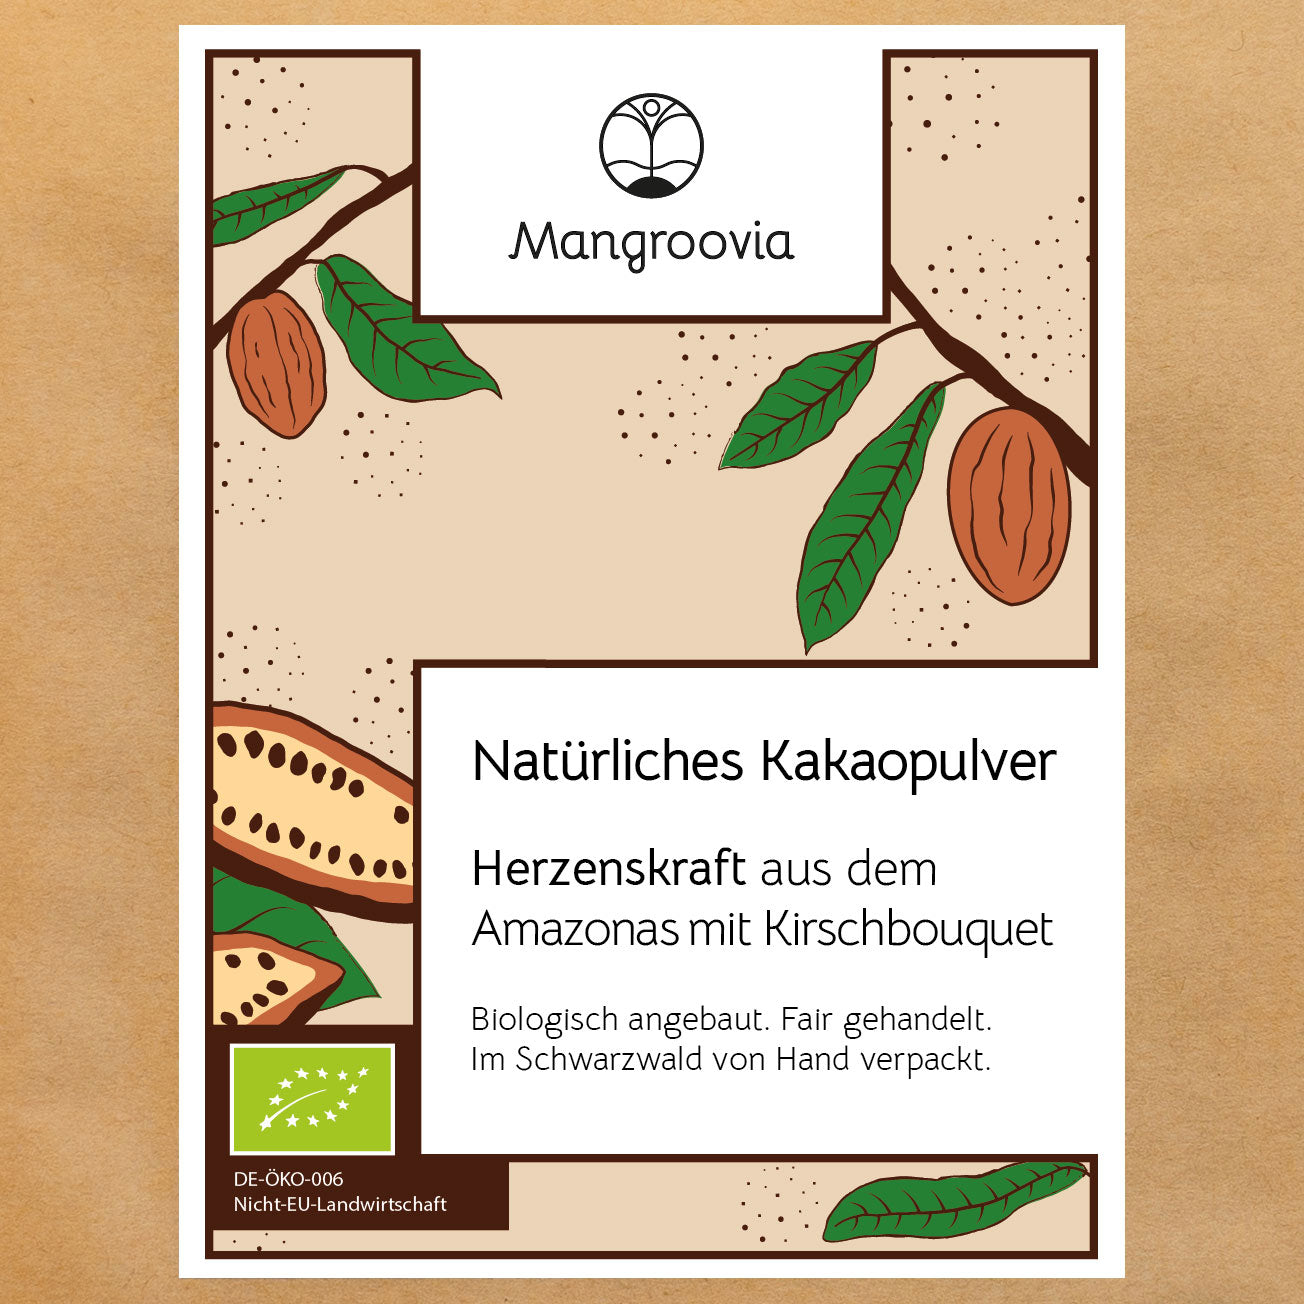 Bio Kakaopulver kaufen bei Mangroovia 